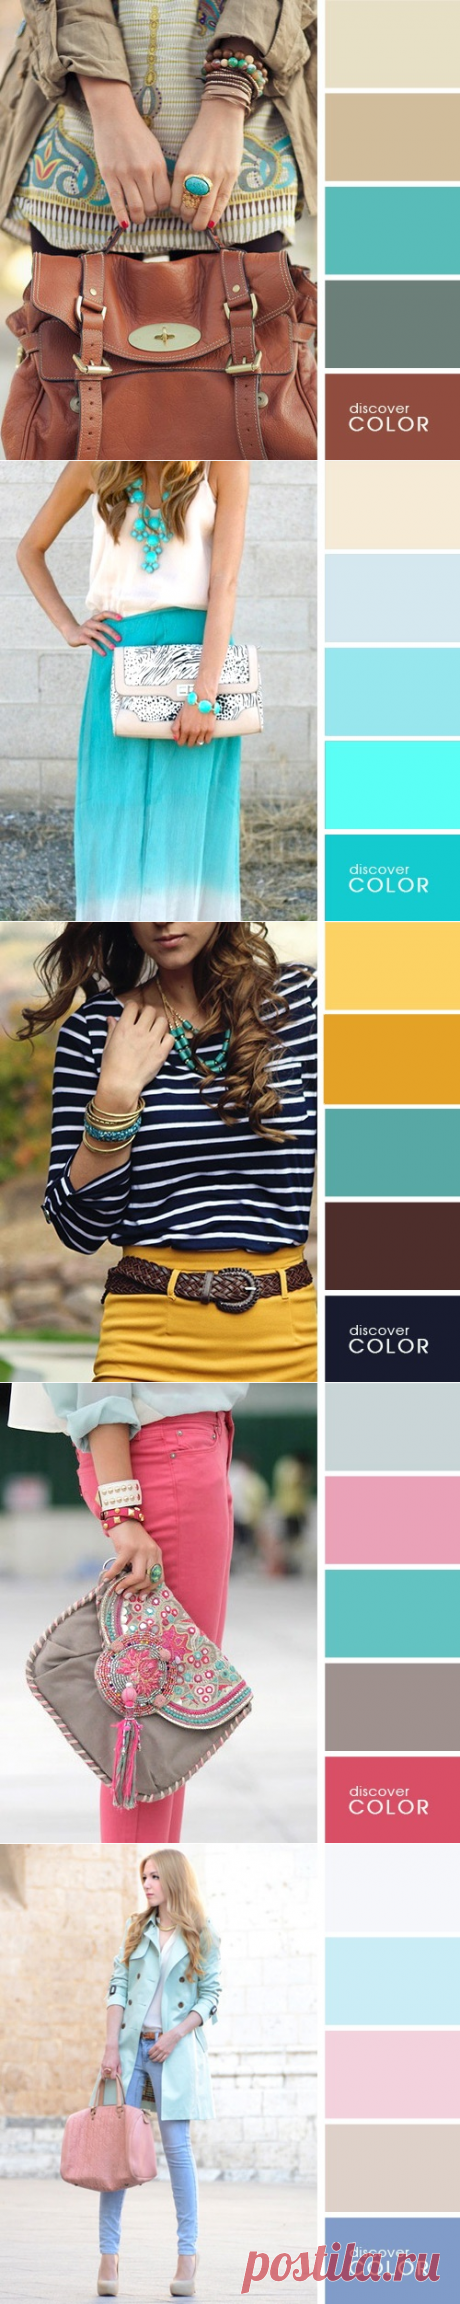 20 идеальных сочетаний цветов одежды для яркого образа – Фитнес для мозга